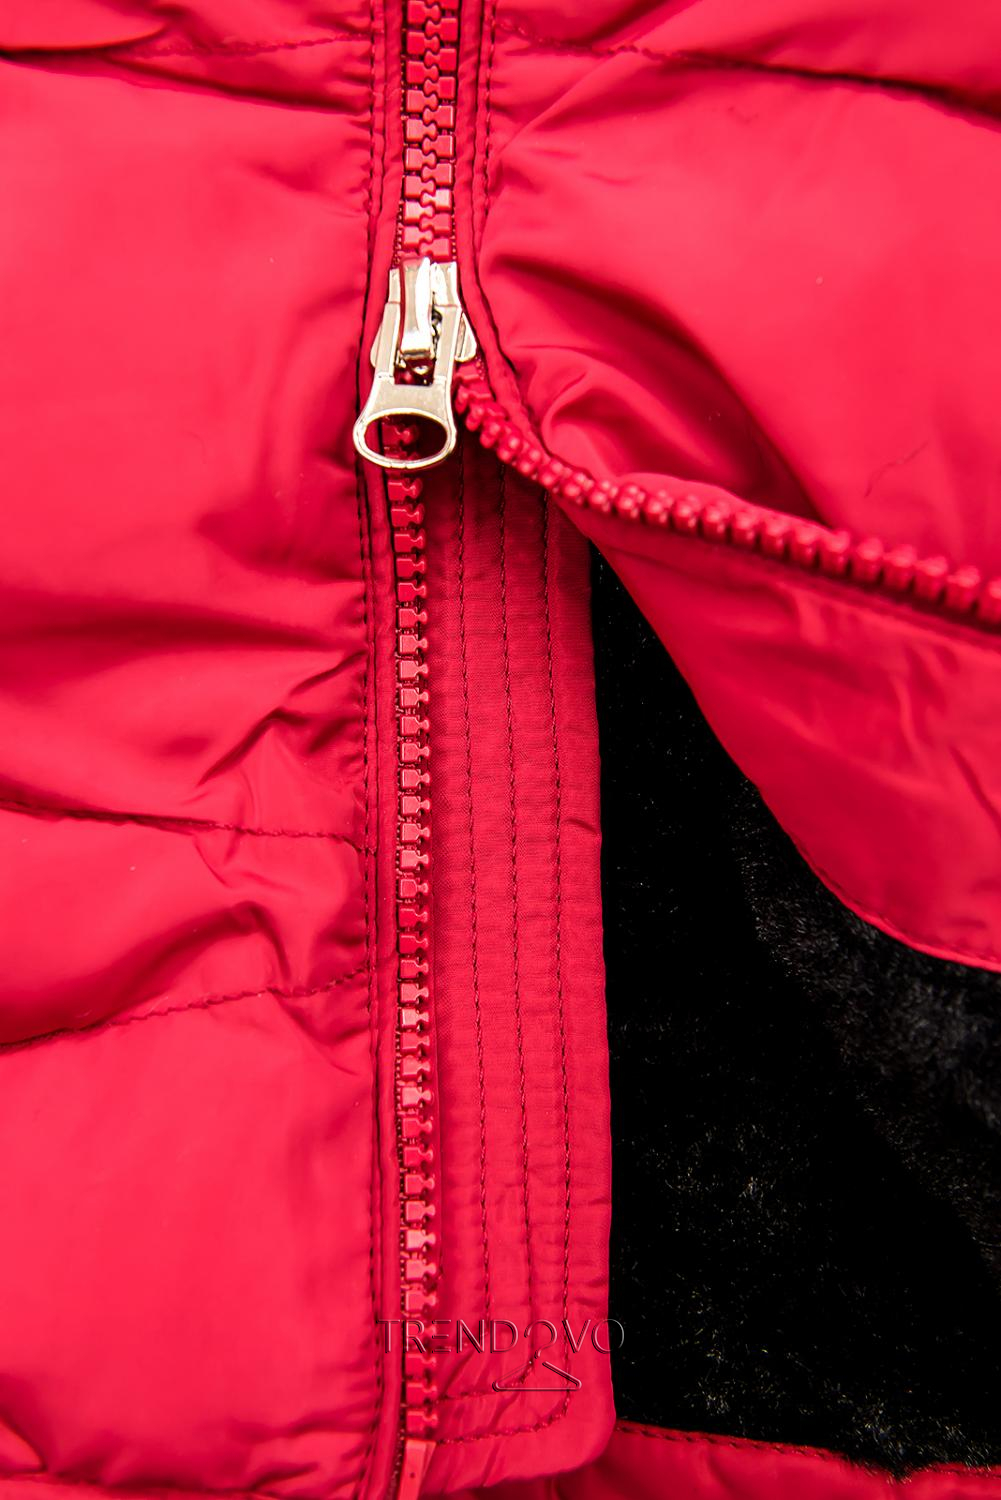 Červená zimní prošívaná bunda s plyšem